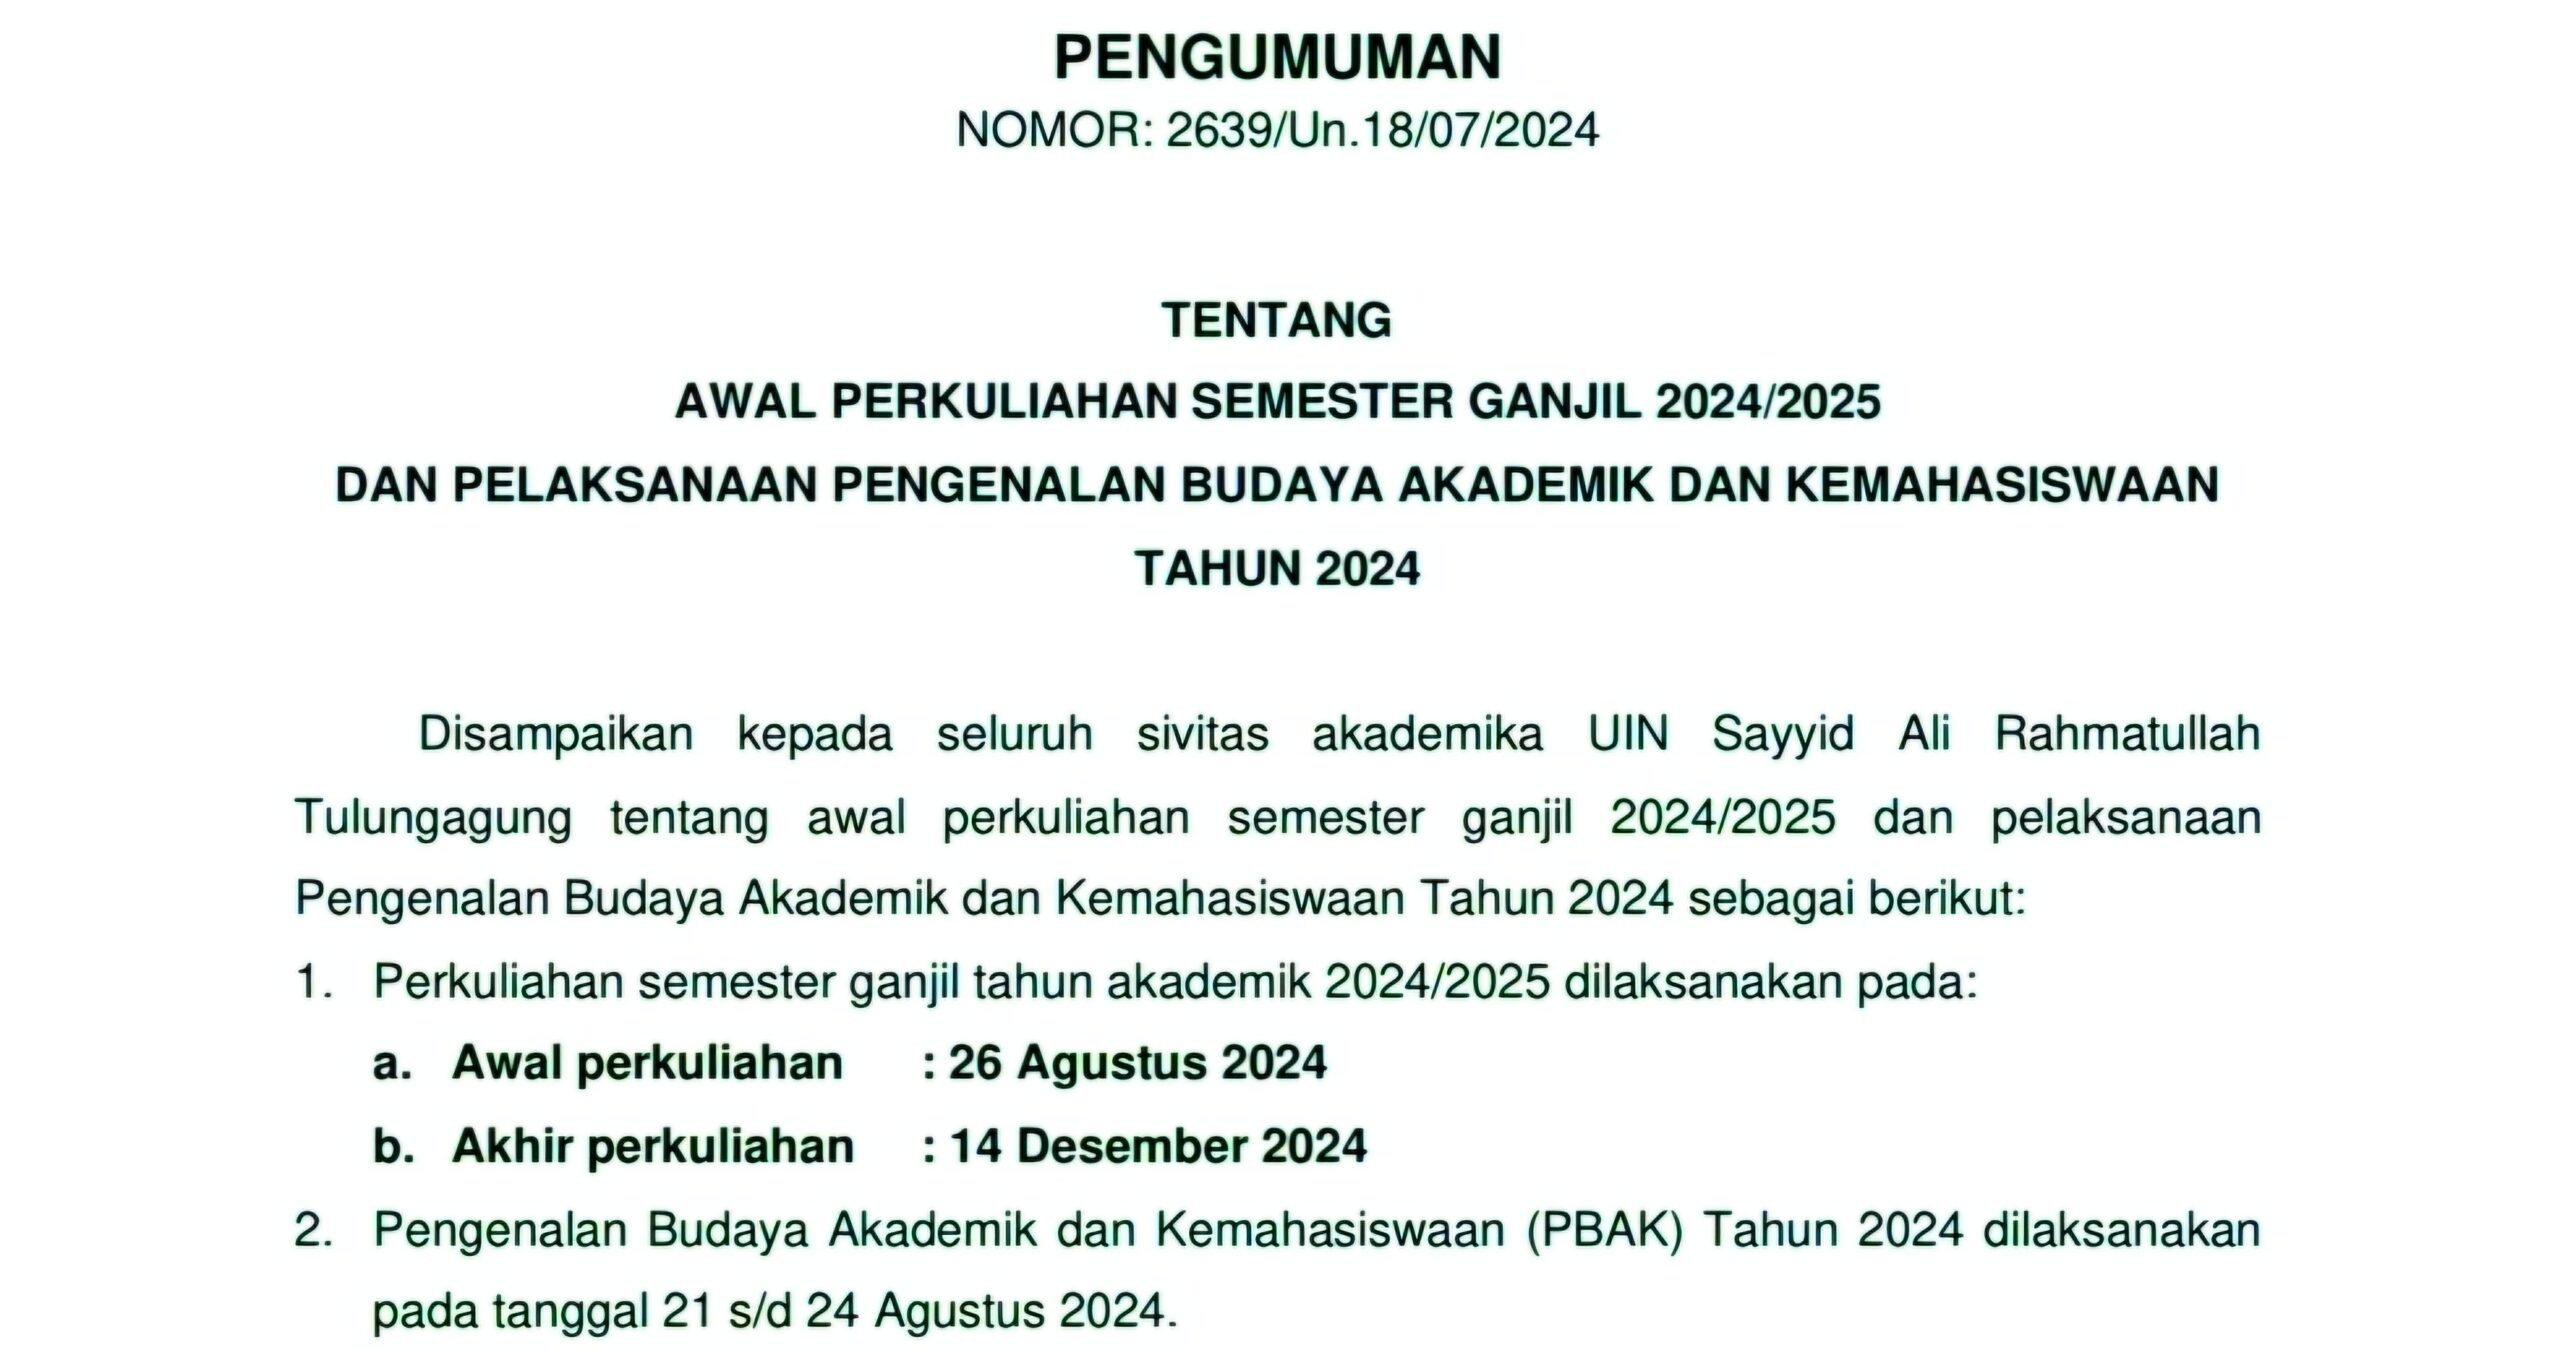 Pengumuman Awal Perkuliahan Semester Ganjil TA 2024/2025 dan Pelaksanaan Pengenalan Budaya Akademik dan Kemahasiswaan (PBAK) Tahun 2024